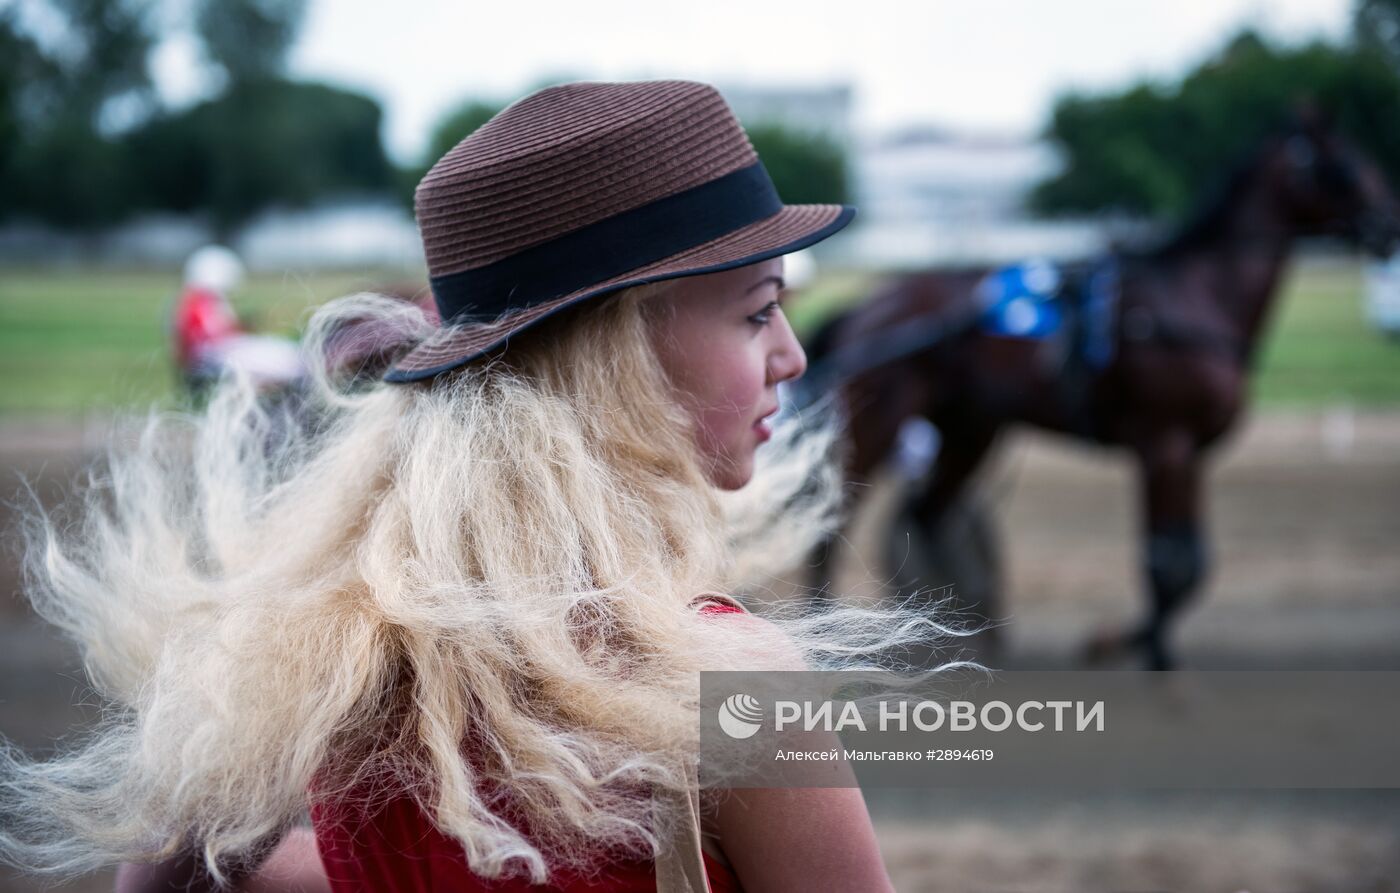 Конно-спортивные соревнования "Большой Сибирский круг" в Омске